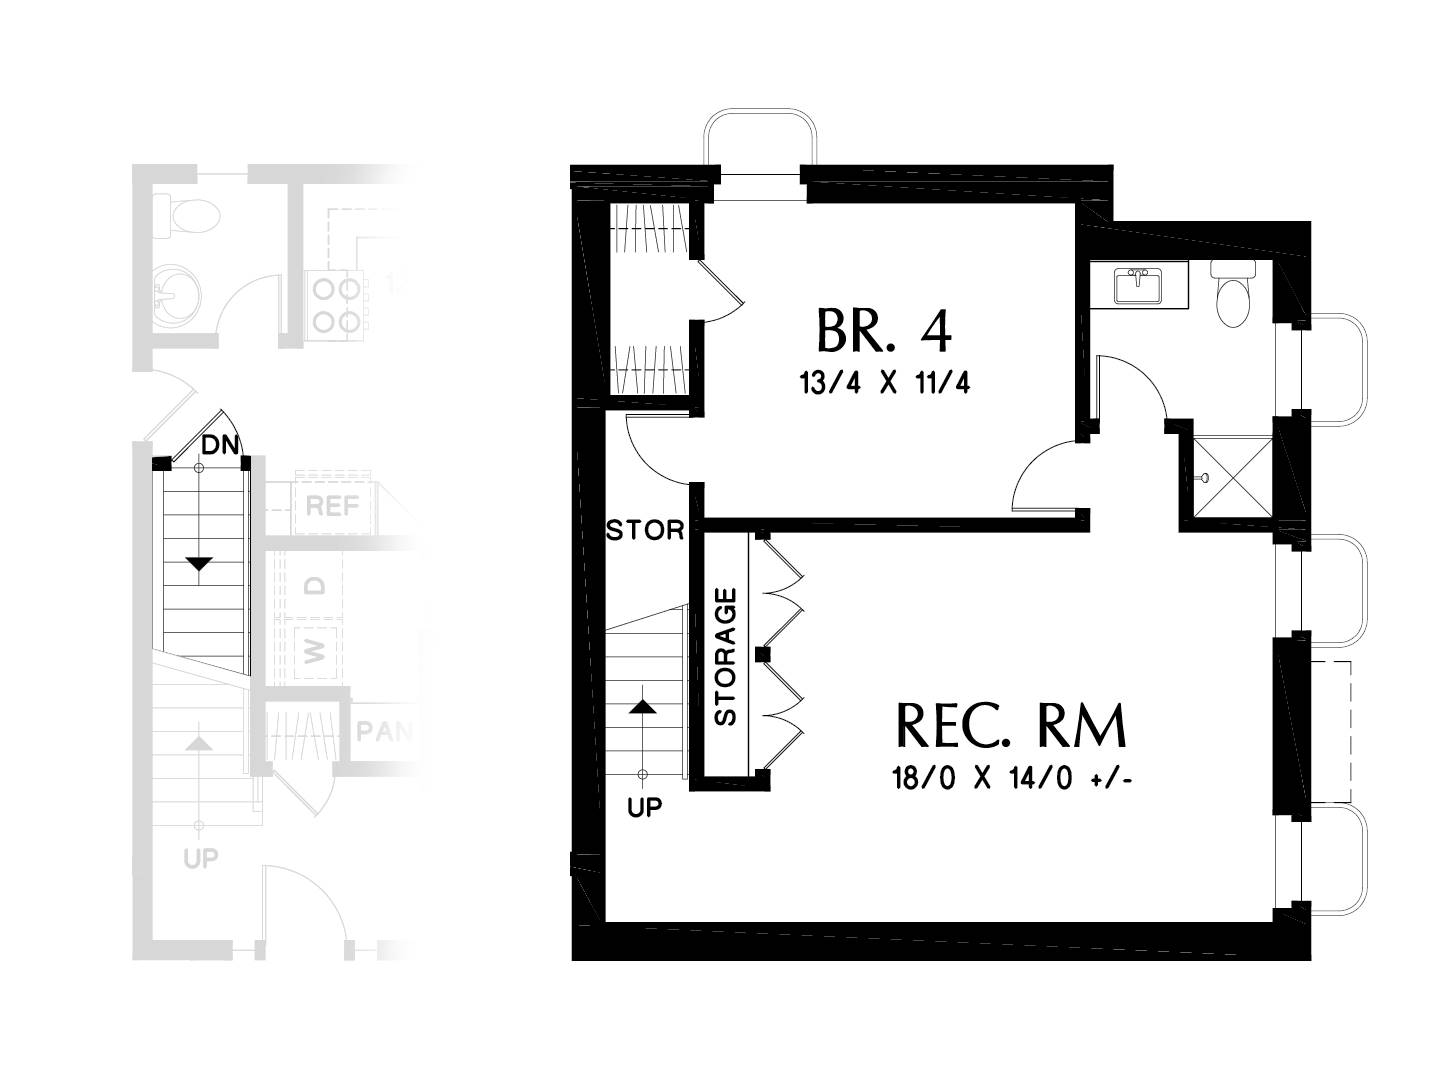 Basement/Rec Room/BR 4 option